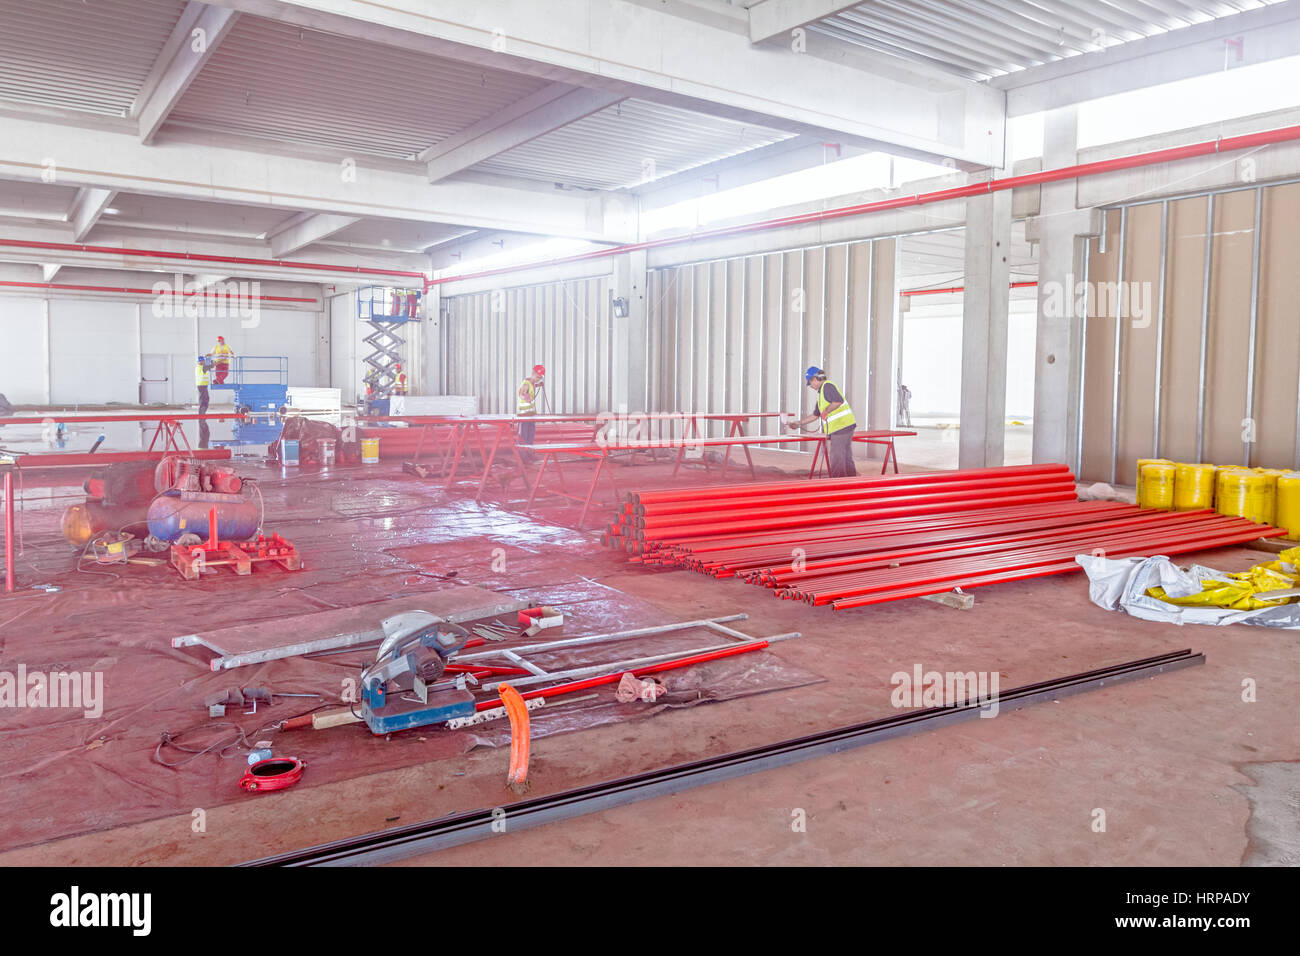 Les travailleurs sont rond long de la peinture rouge dans les tuyaux à l'aide d'un pistolet aérographe at construction site. Banque D'Images